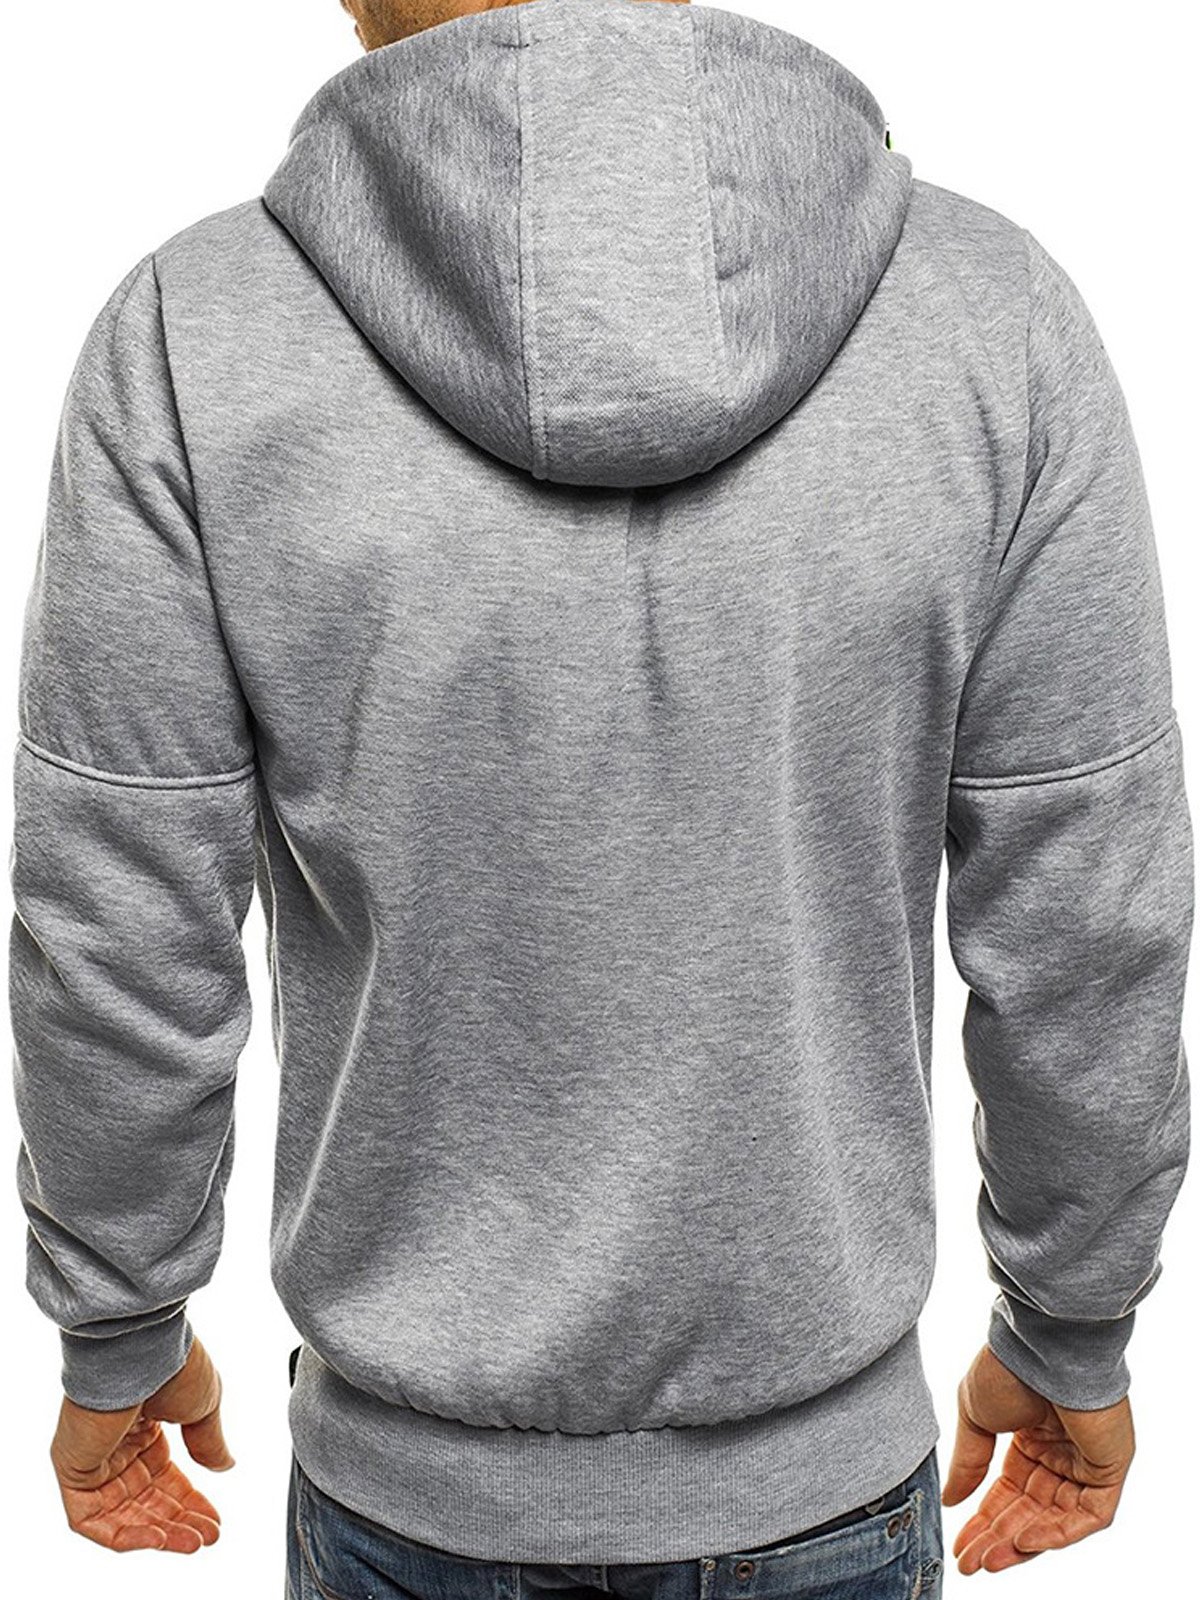 Royaura Men's Zipper Hooded Sweatshirt